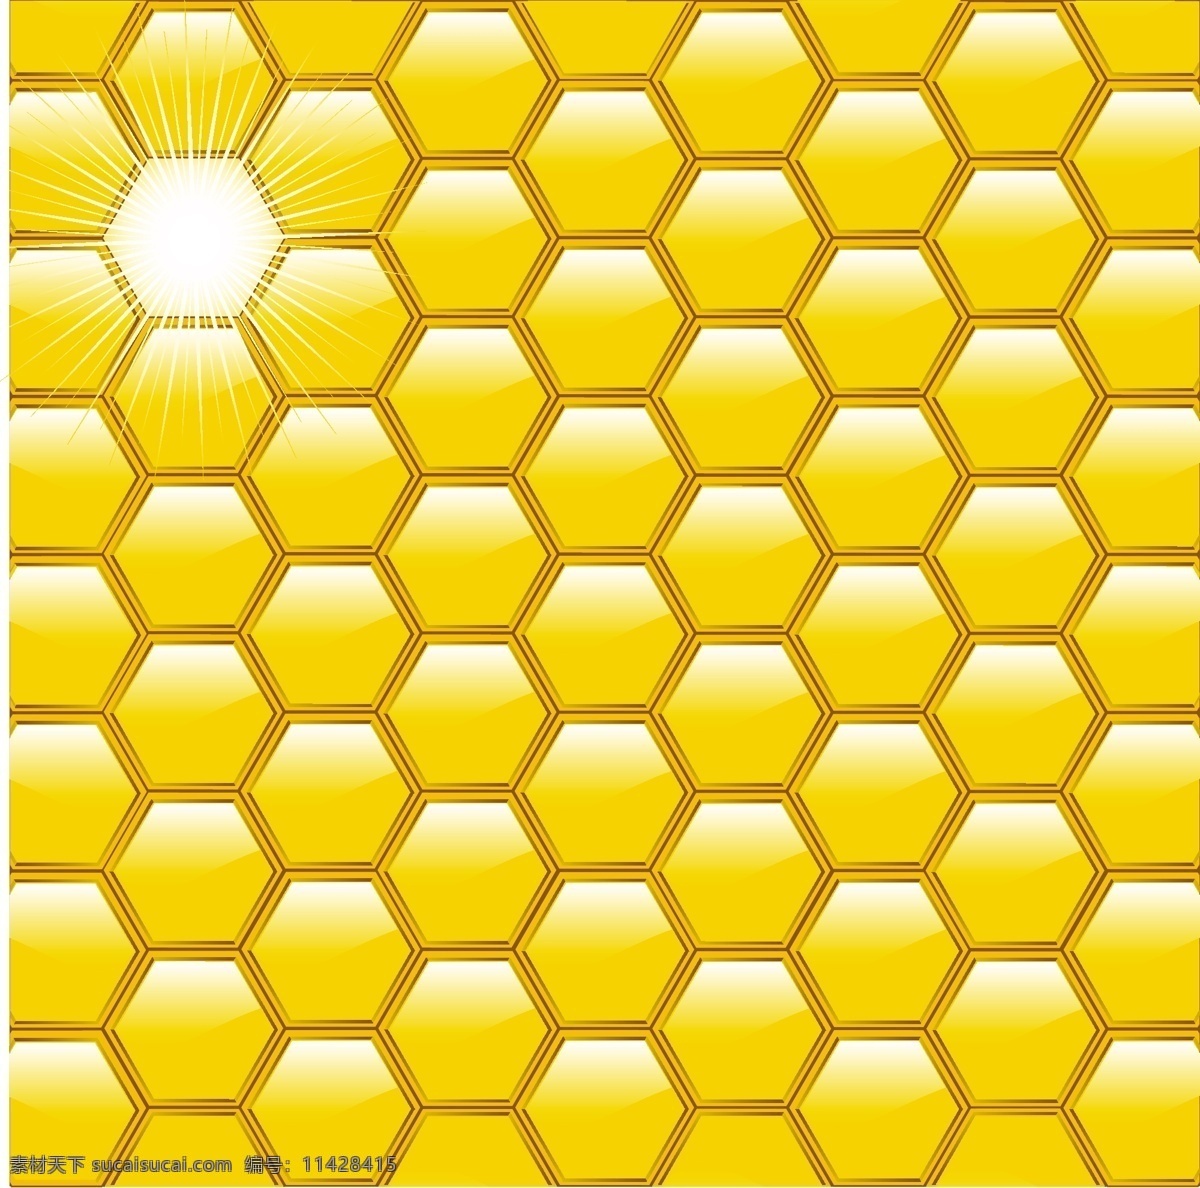 昆虫 蜜蜂 窝 翅膀 蜂巢 蜂蜜 矢量素材 蜜蜂窝 酿蜜 矢量图 其他矢量图